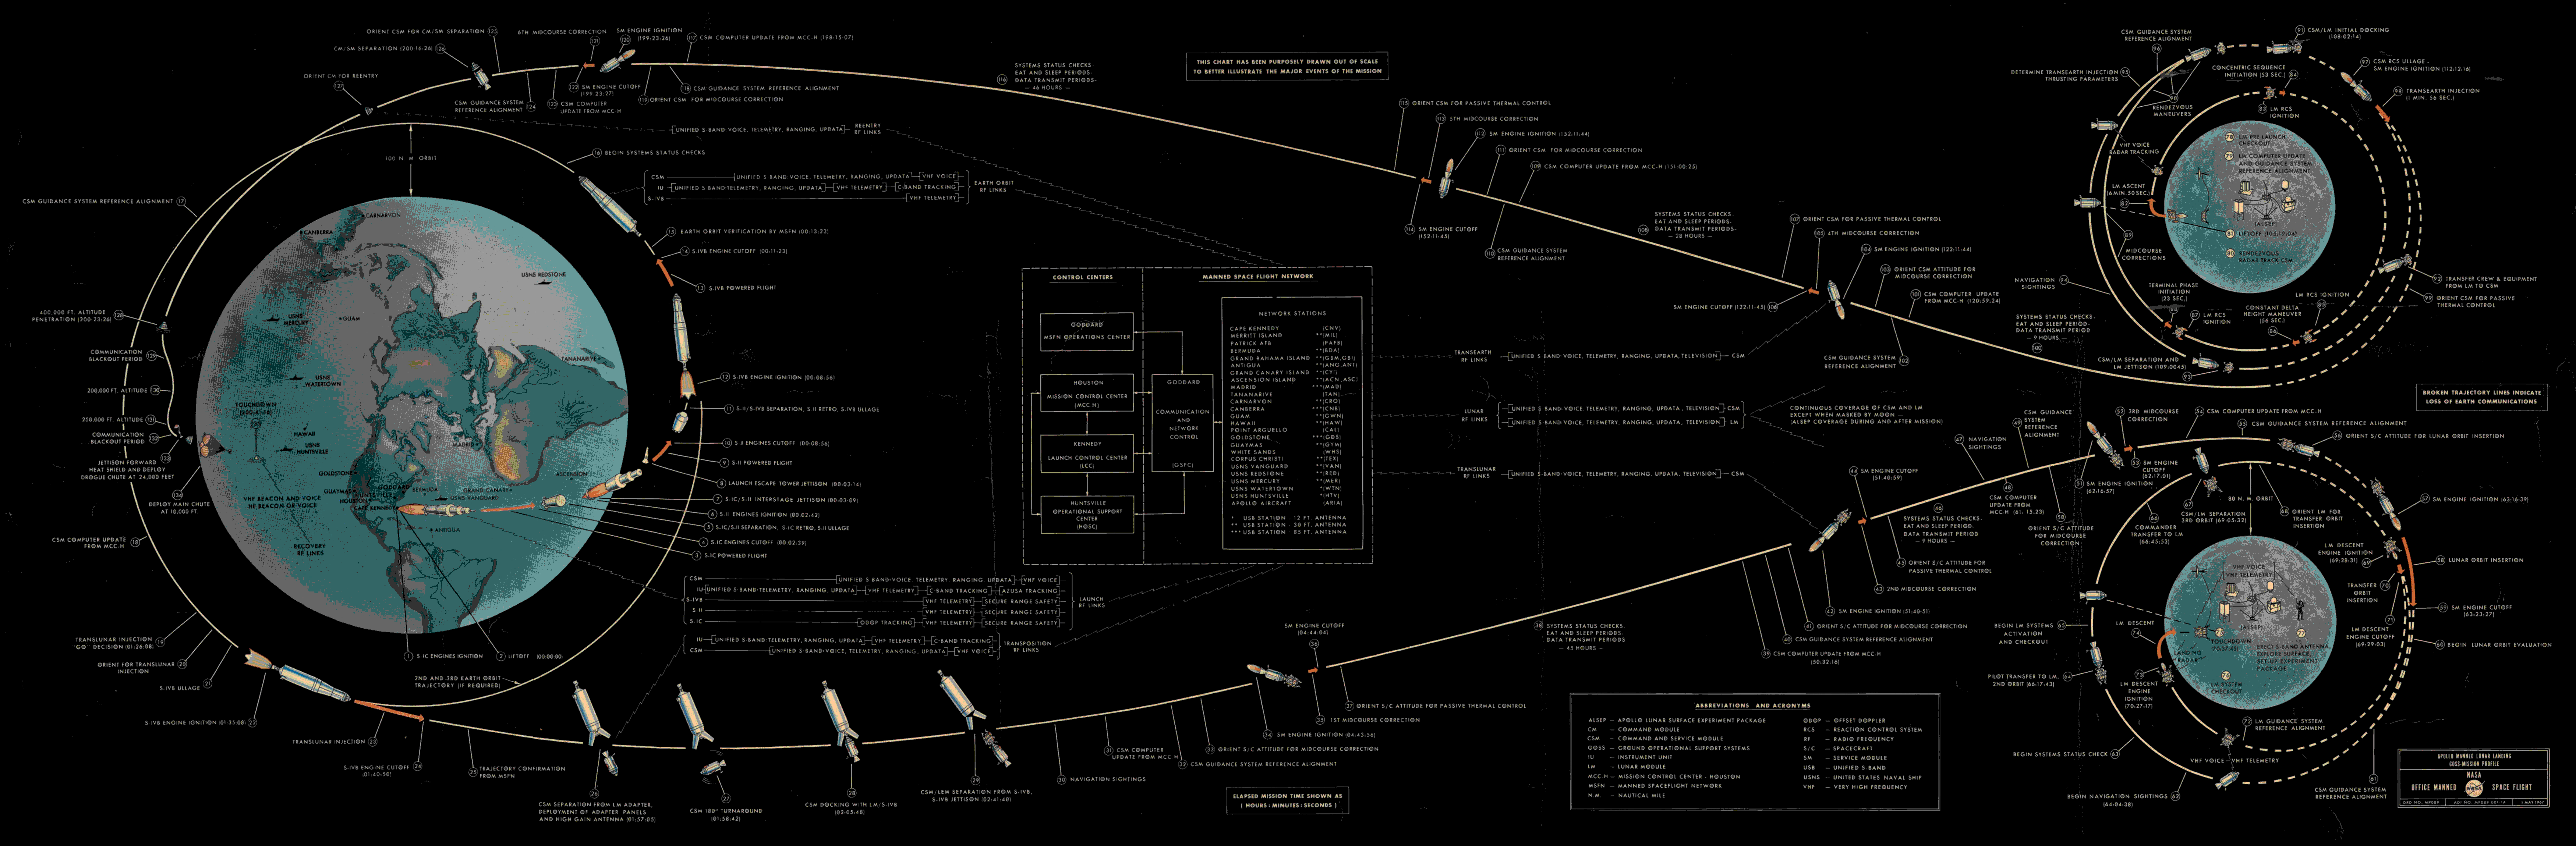 Apollo flight plan